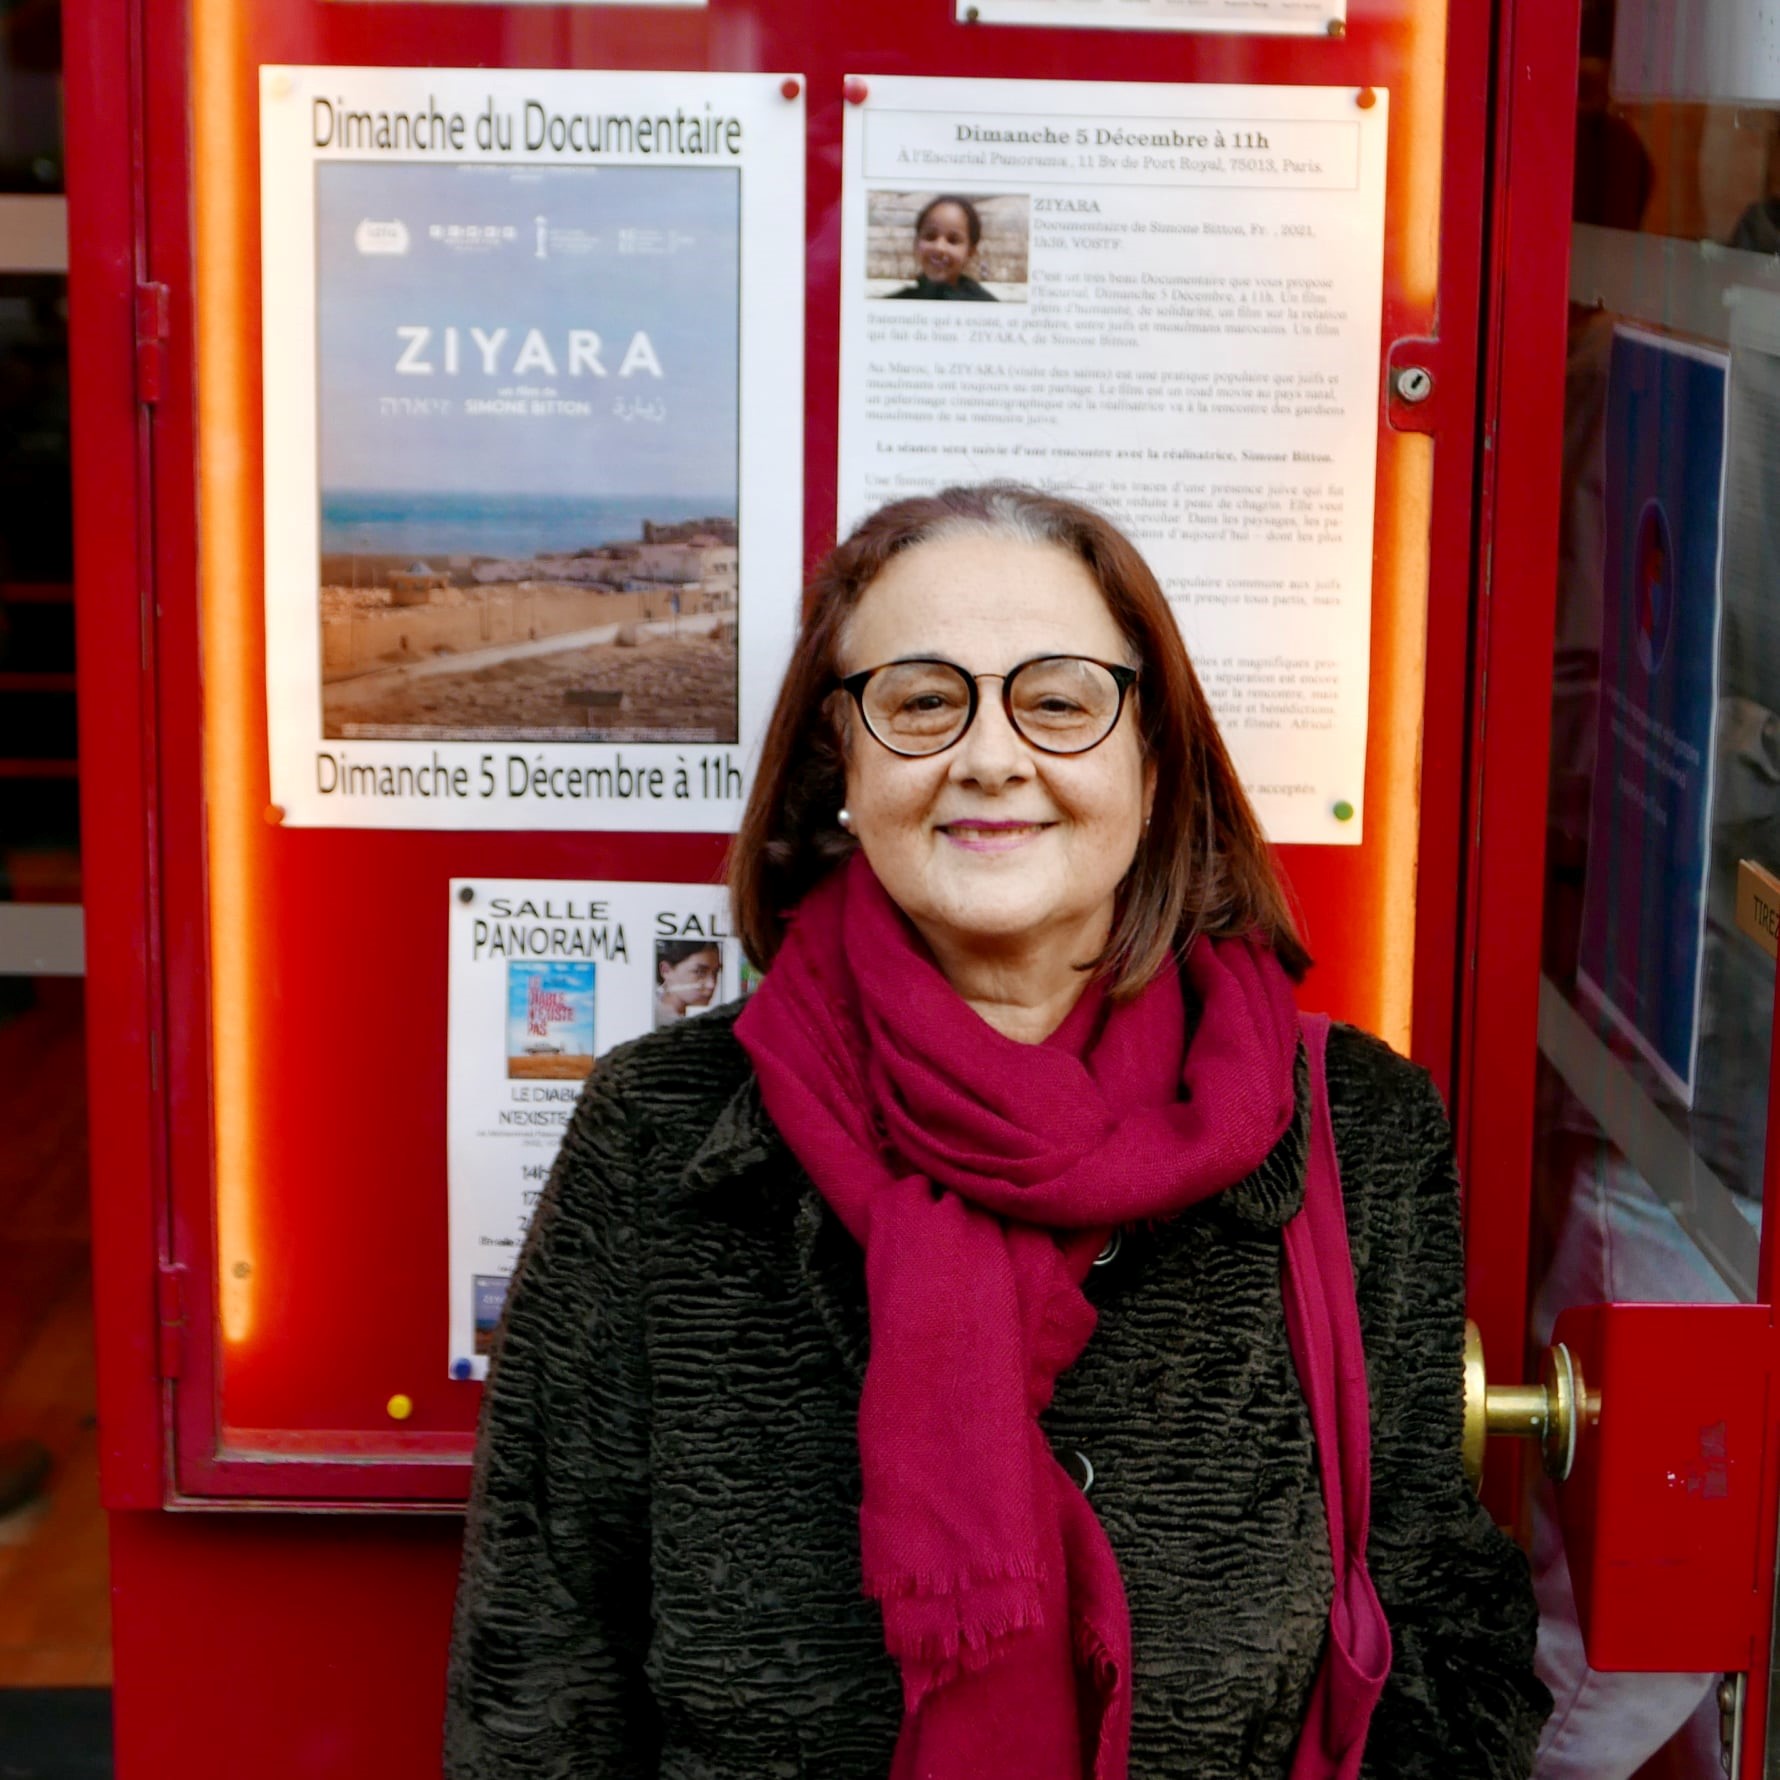 ‘זיארה’: סרט חדש של הבמאית סימון ביטון על שורשים מרוקאים-יהודים